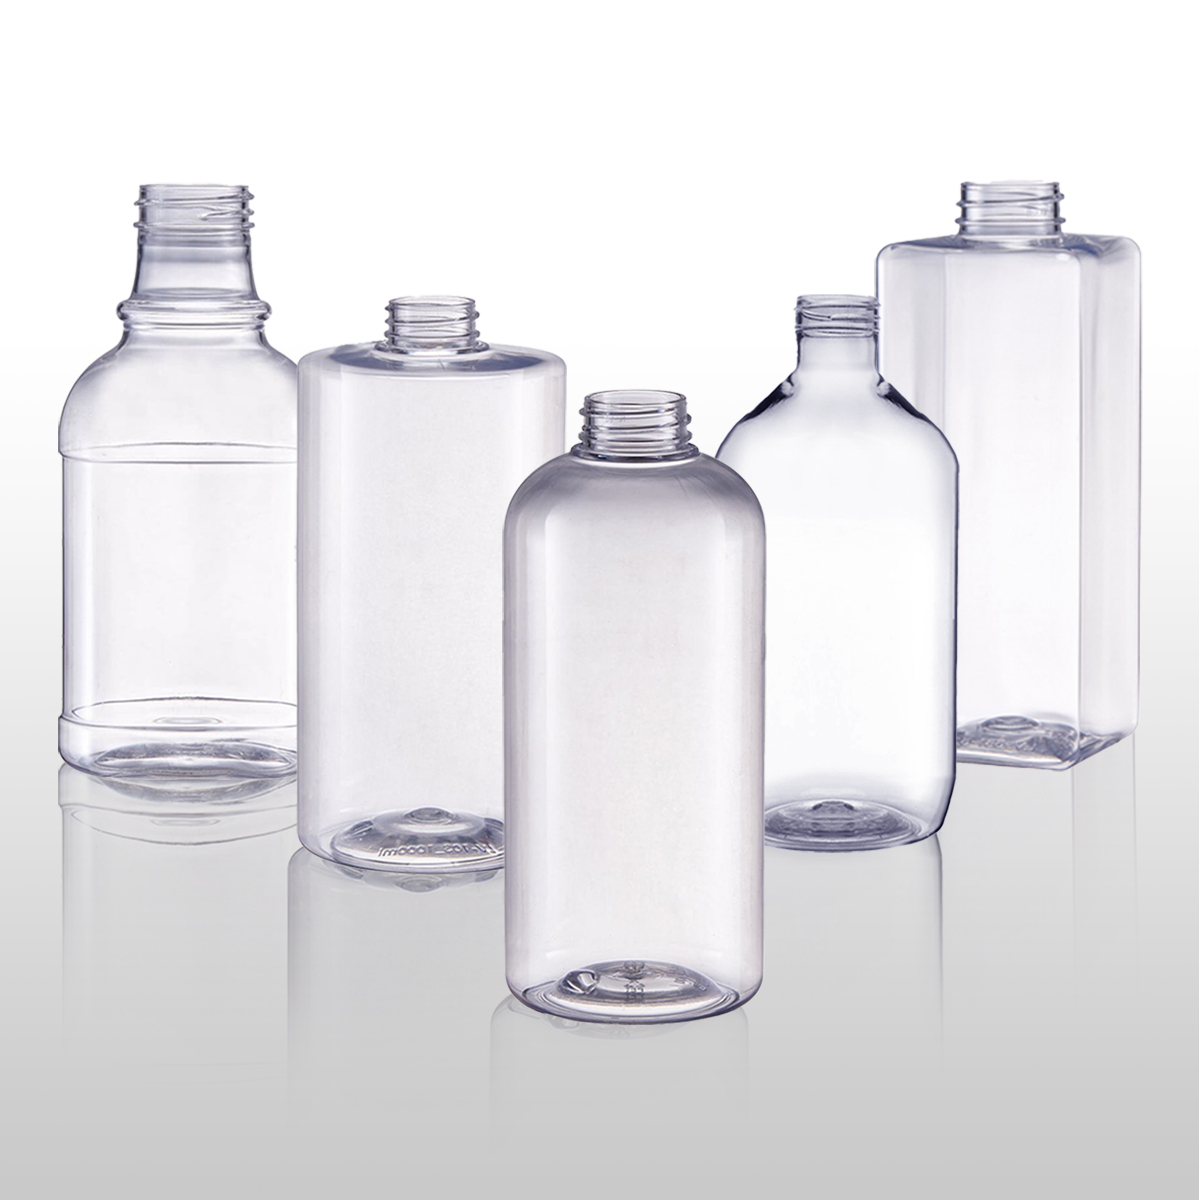 OEM/ODM PET Bottle & Jar Suppliers